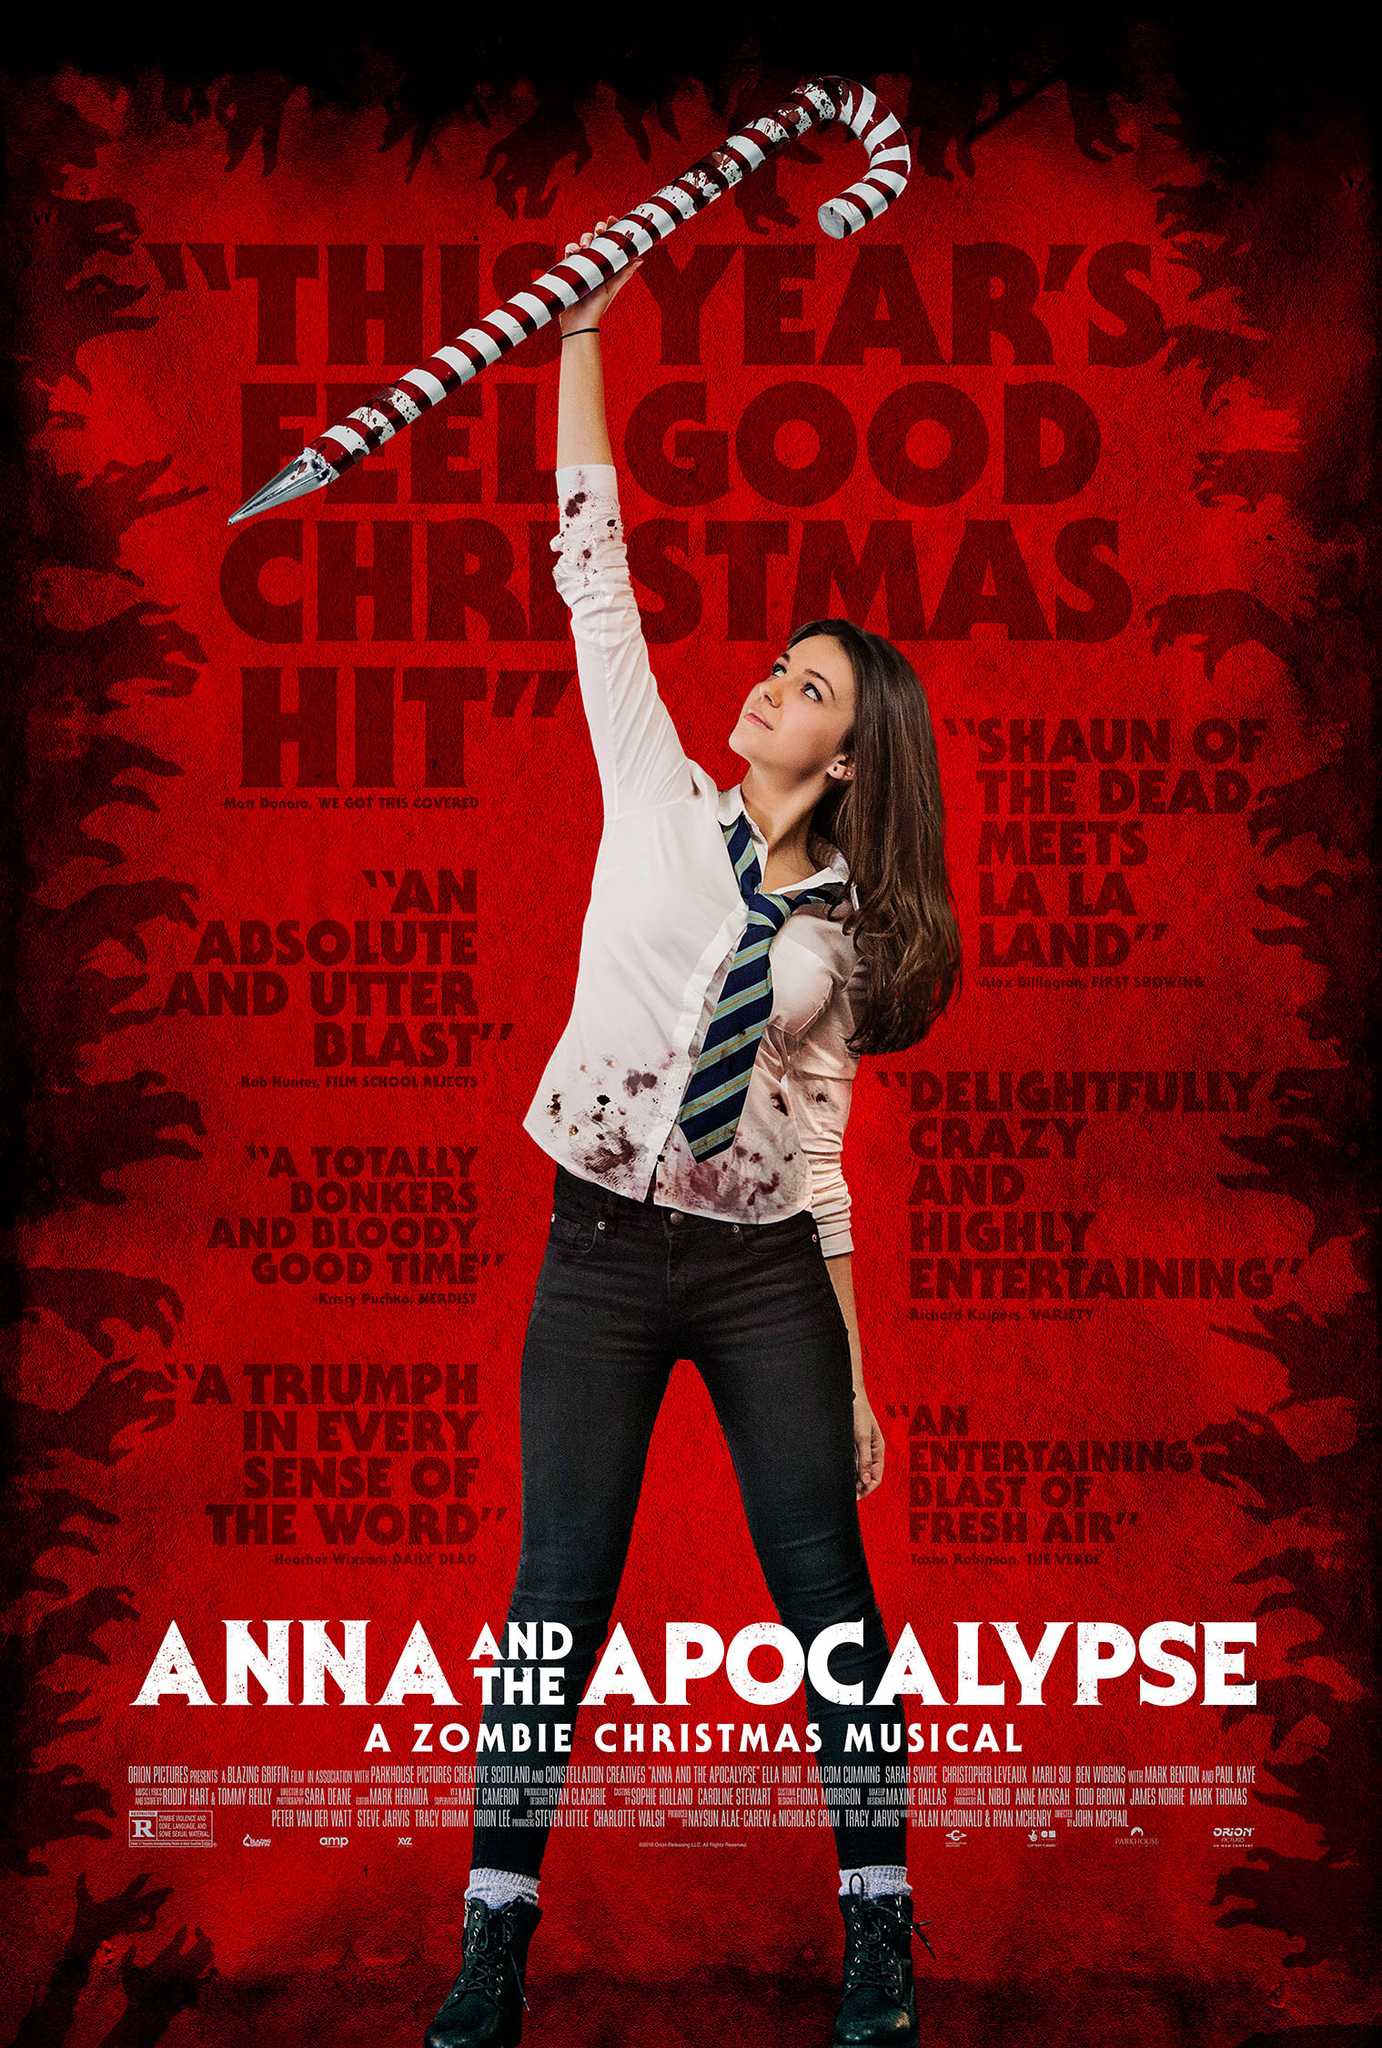 مشاهدة فيلم Anna and the Apocalypse 2017 مترجم